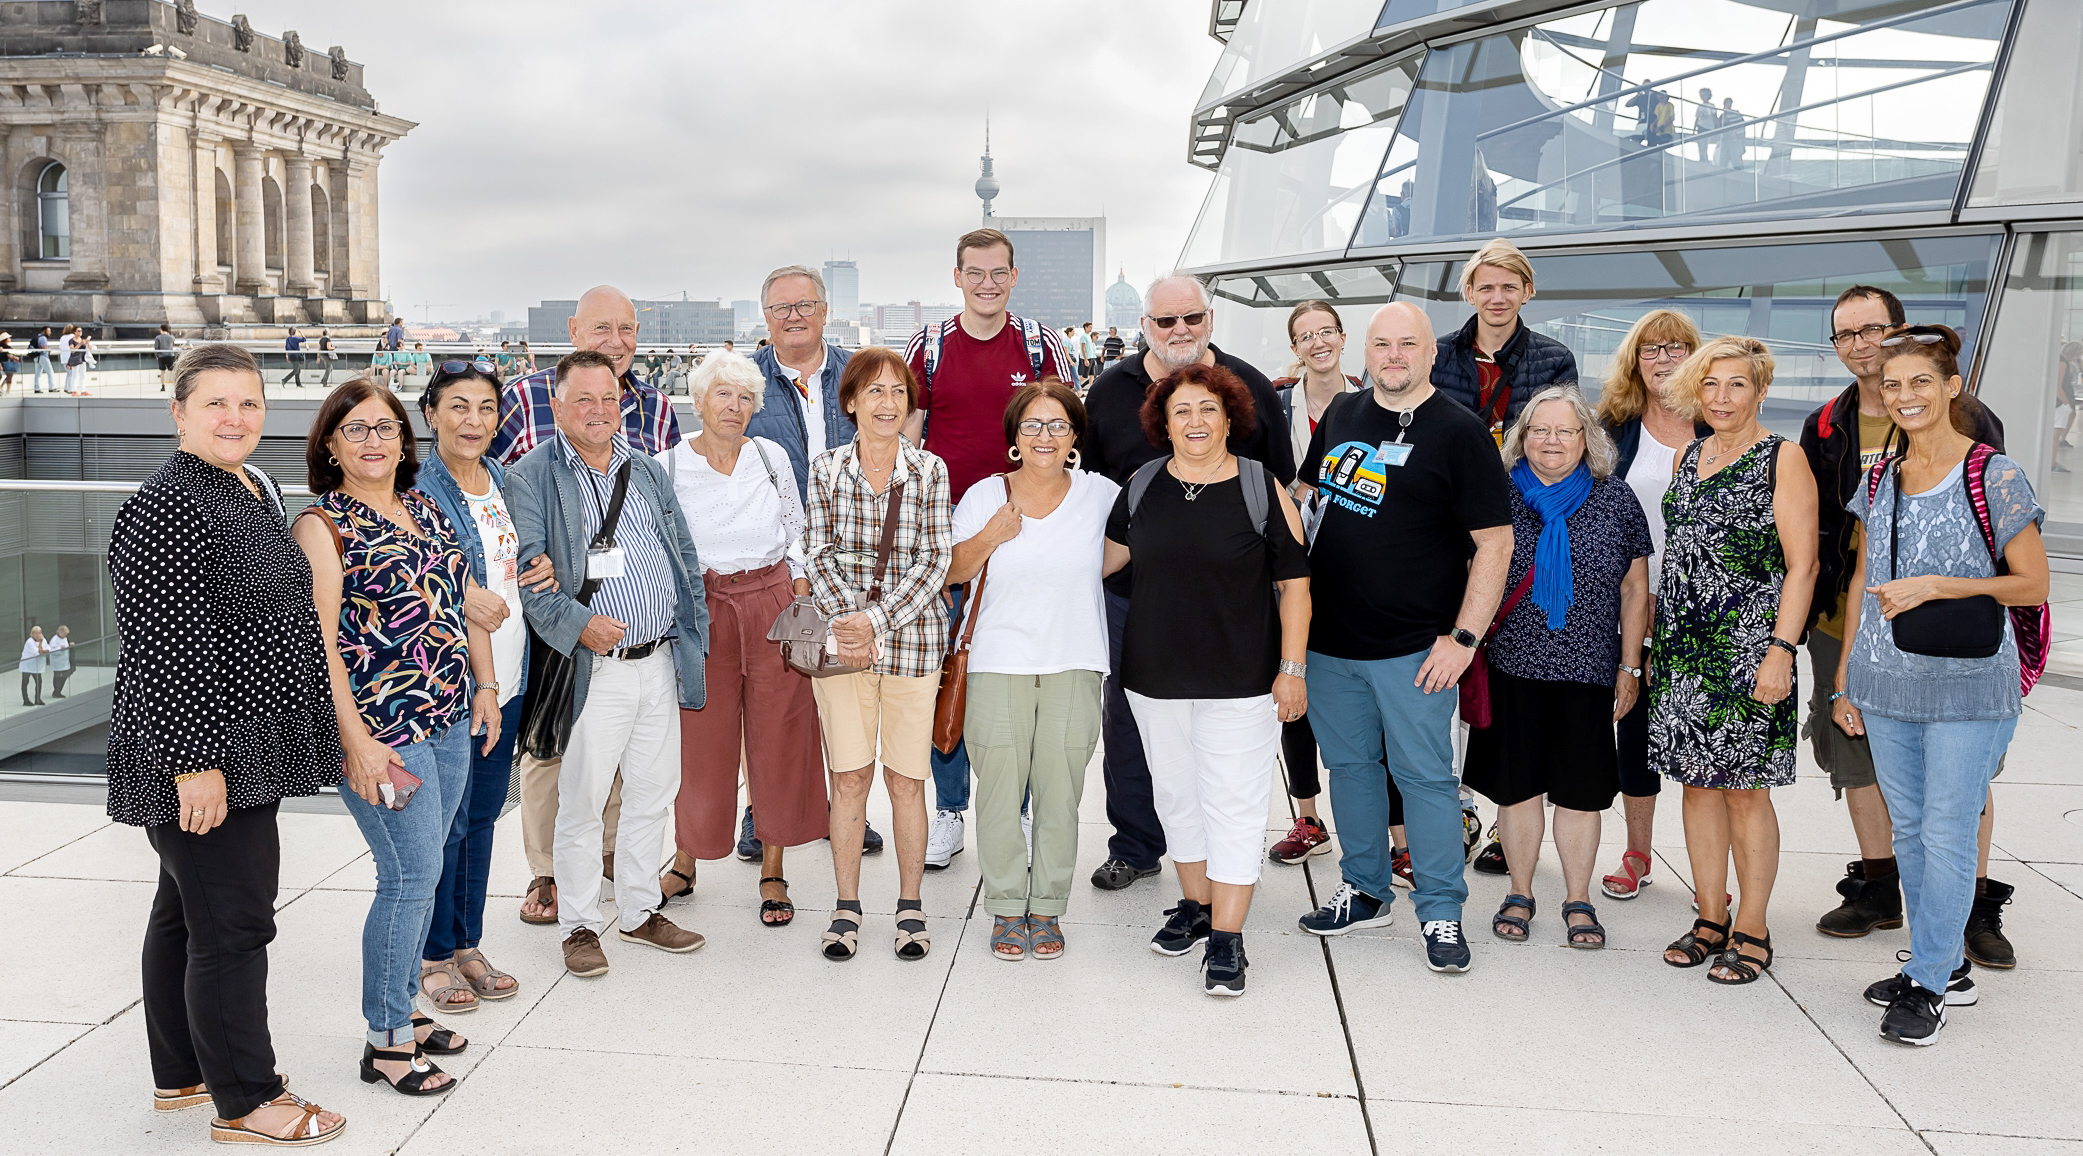 Gruppenfoto der Besuchergruppe eines Abgeordneten im Deutschen Bundestag in Berlin.